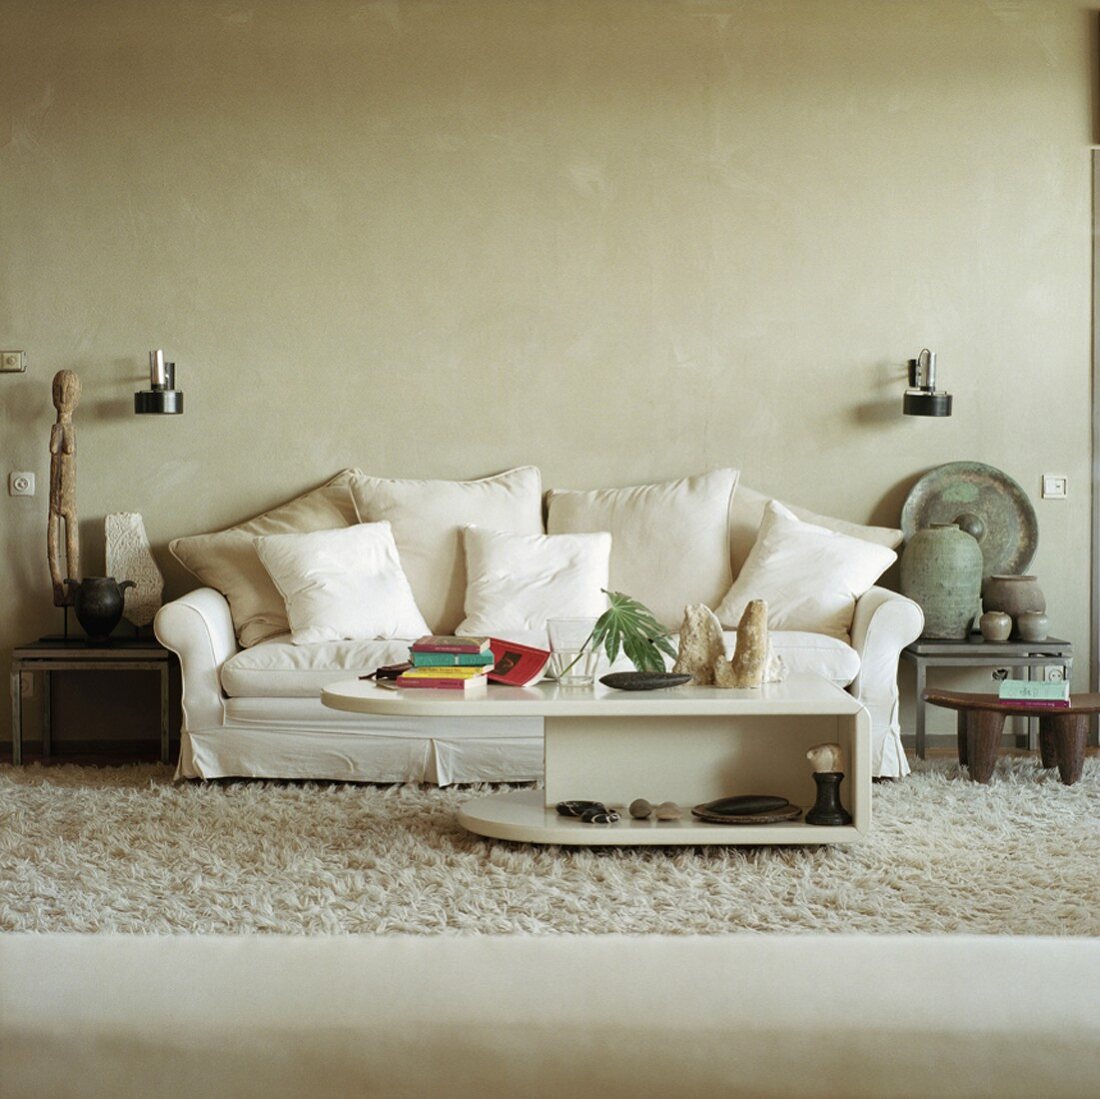 Weisses Sofa mit vielen Kissen und antike Tongefäße und Sklupturen auf Beistelltischen